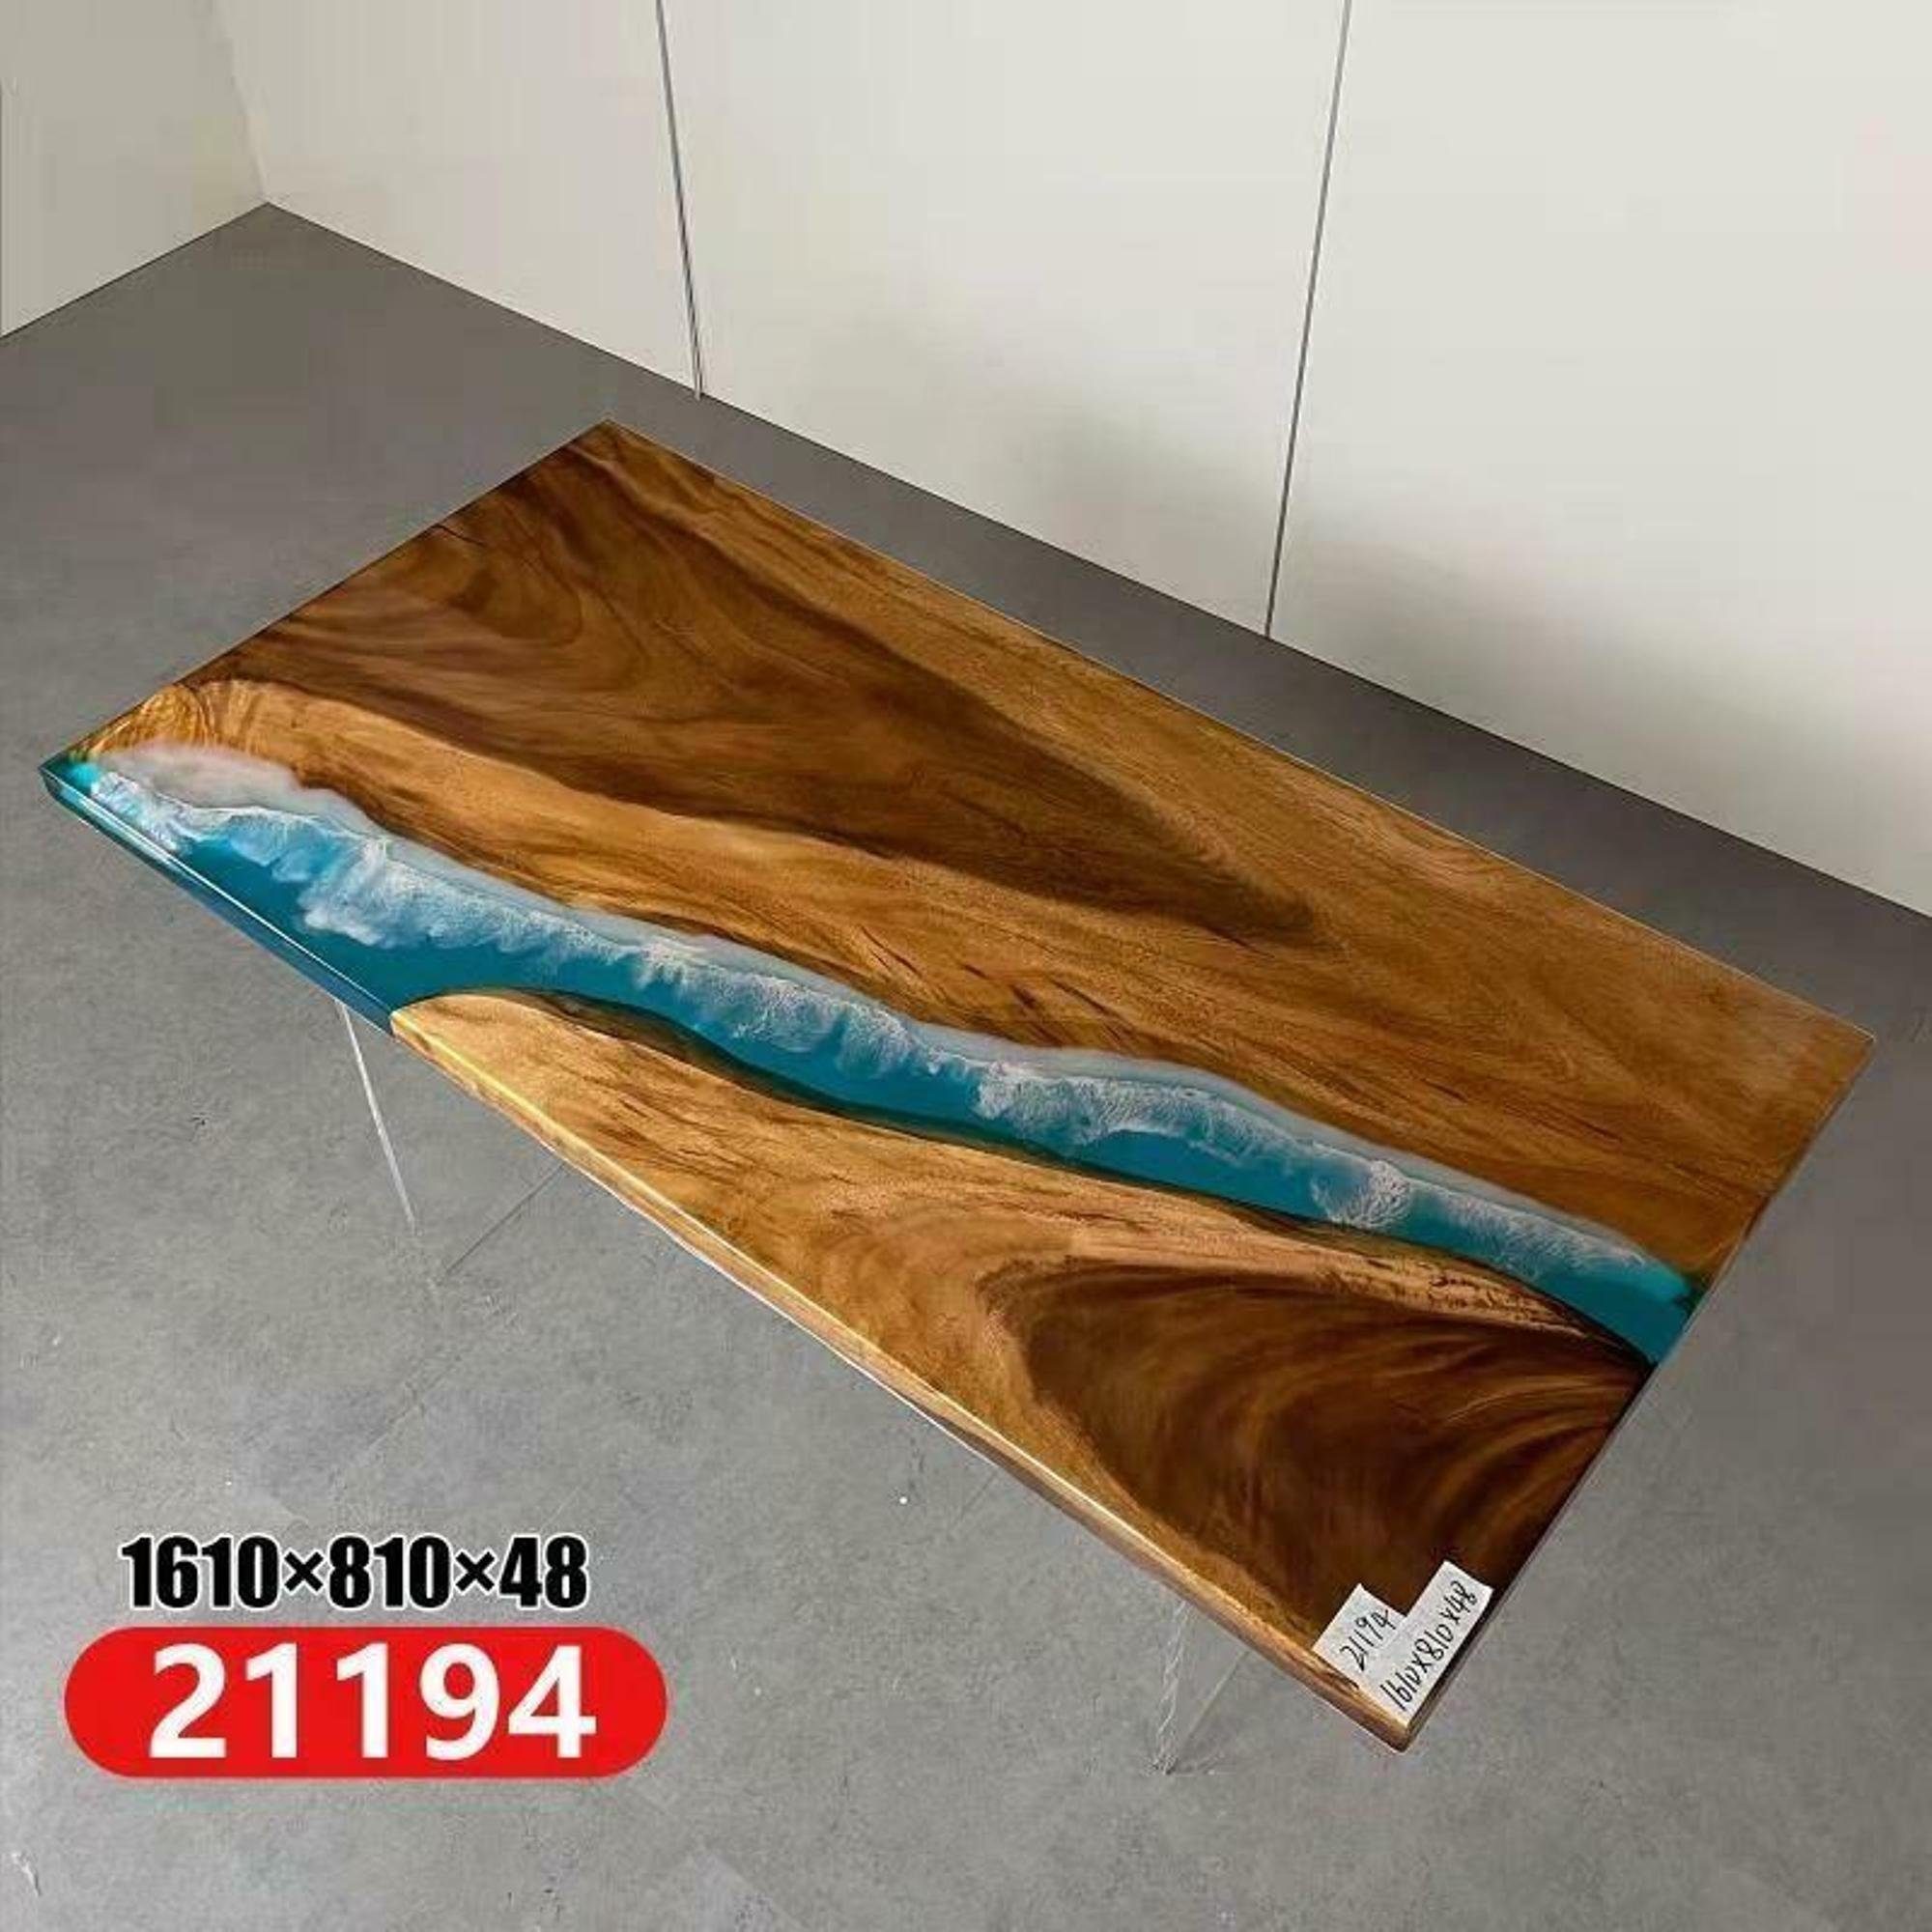 JVmoebel Esstisch, River Table Esstisch Echtes Holz Massiv Epoxidharz Tische